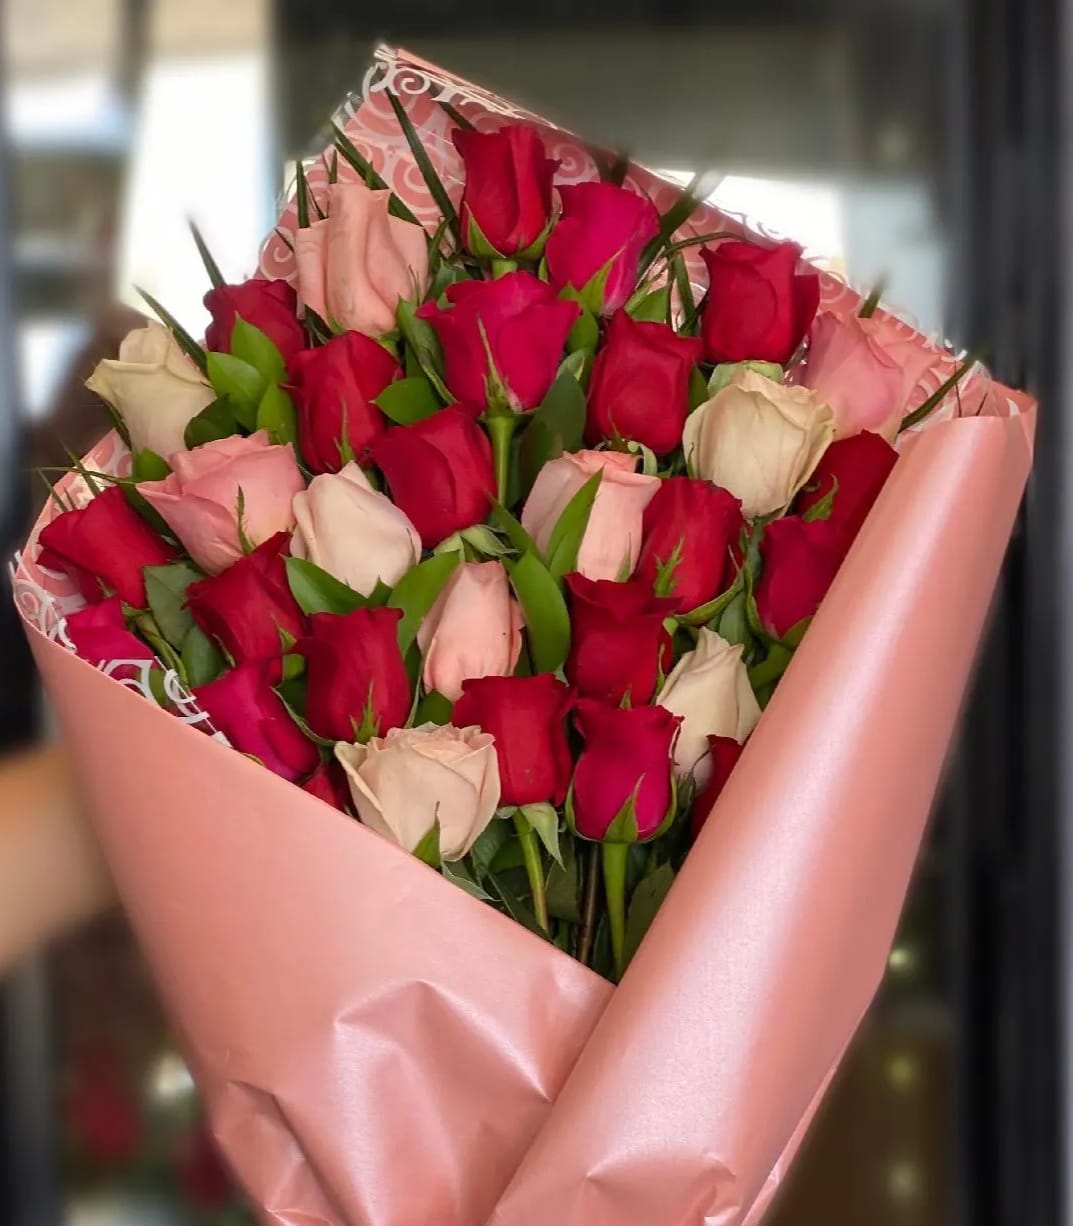 3 Dozen Red & Pink Rose Bouquet in Grand Prairie, TX | Vivid Flowers